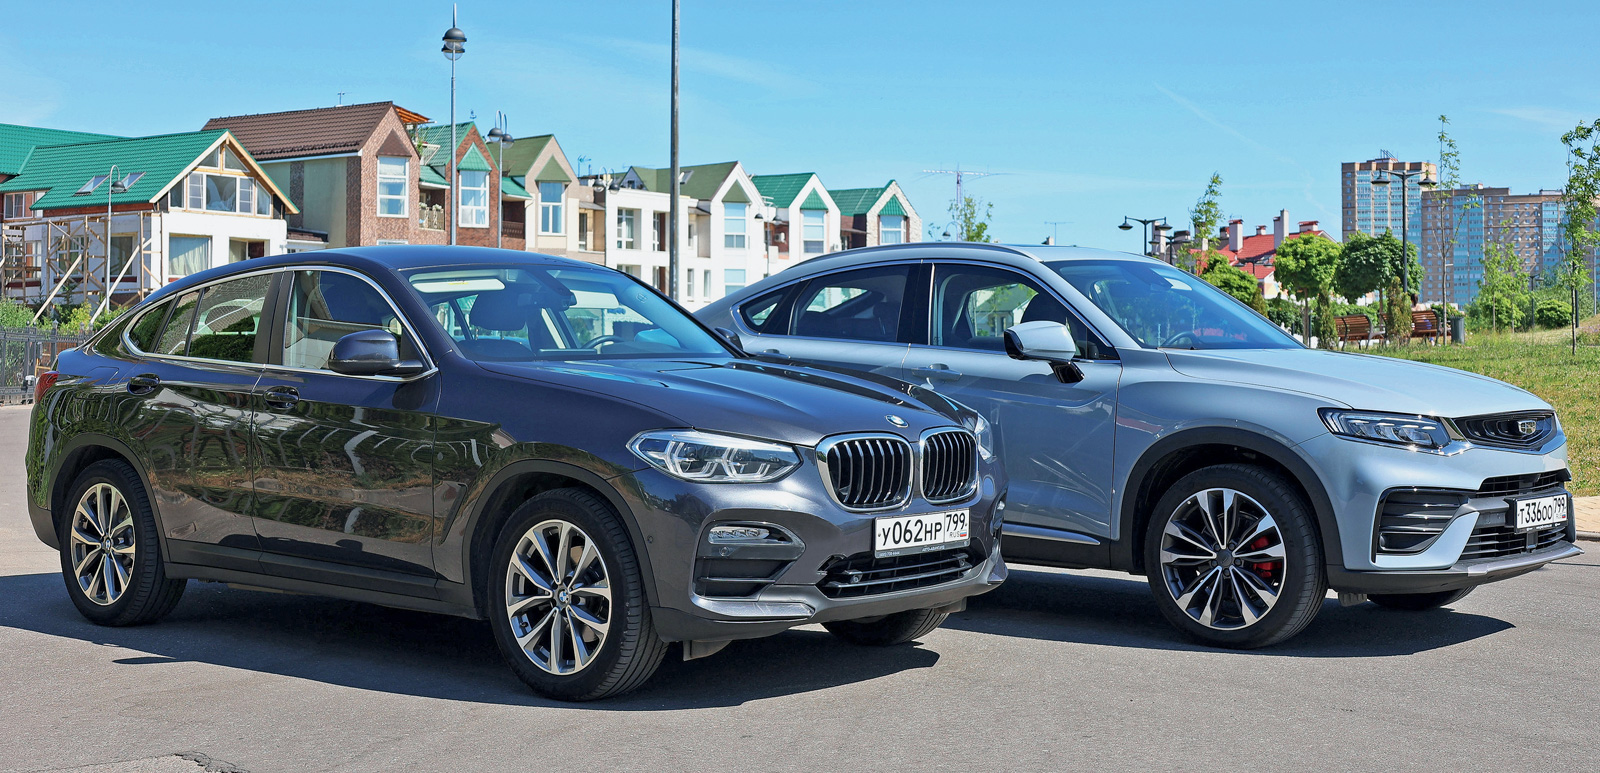 Geely Tugella против BMW X4: что лучше, новый «китаец» или  подержанный «немец»?